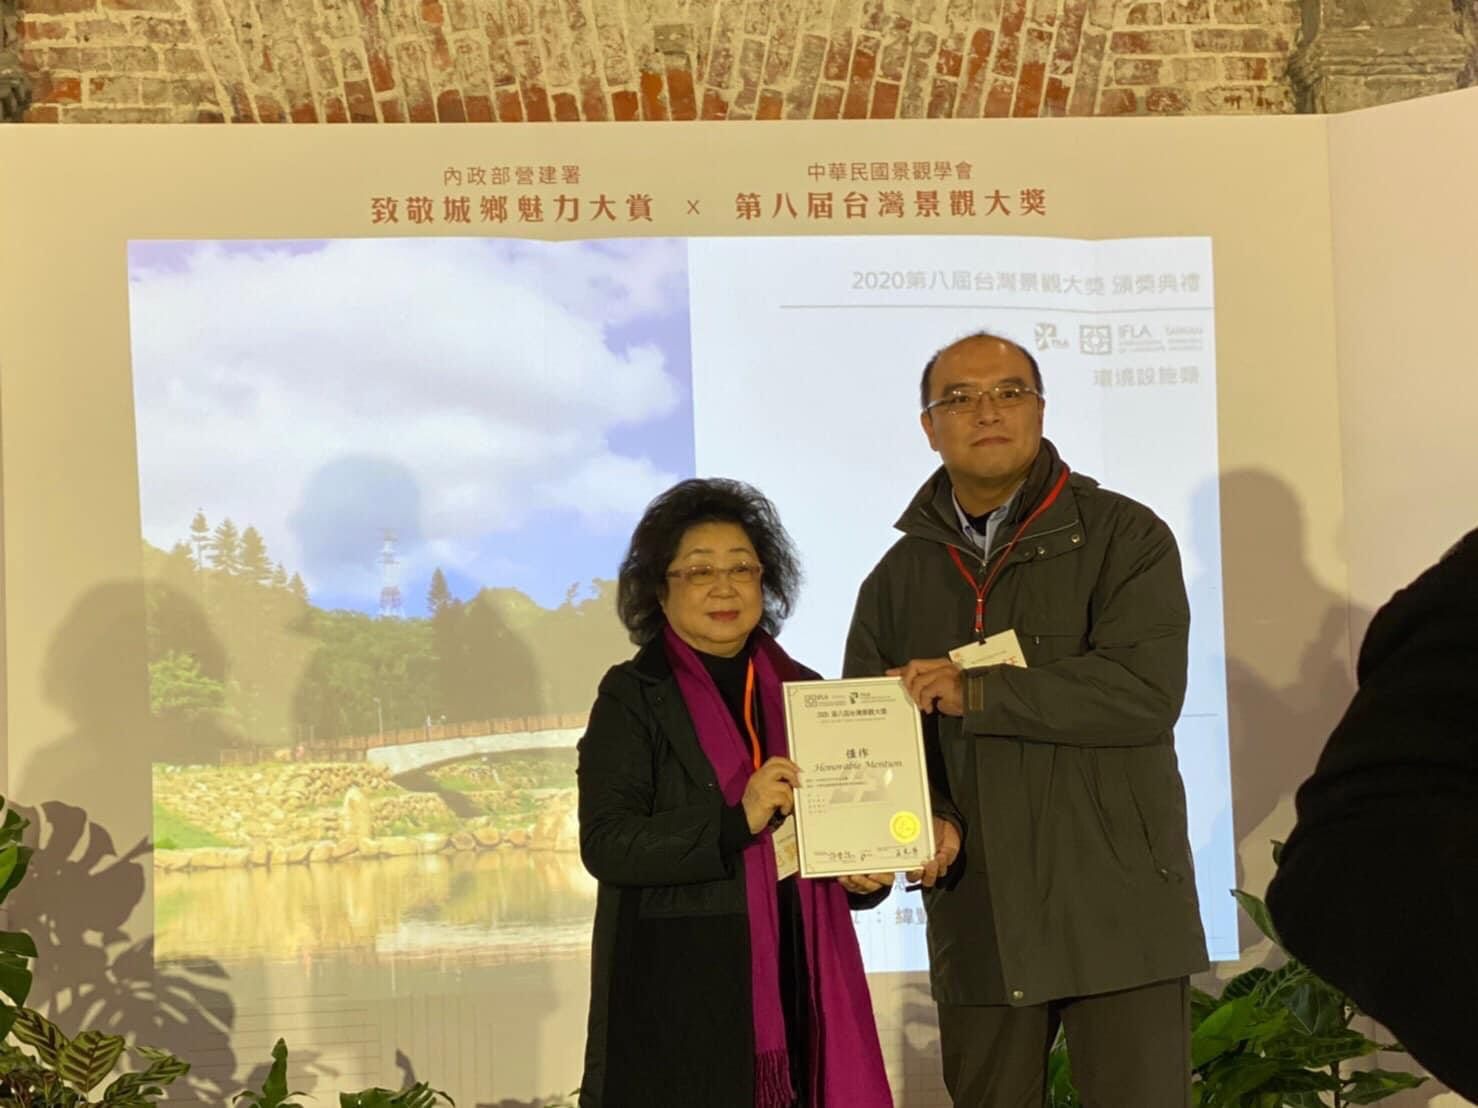 金瑞治水園區獲「2020 第八屆台灣景觀大獎」-「環境設施類別-佳作獎」